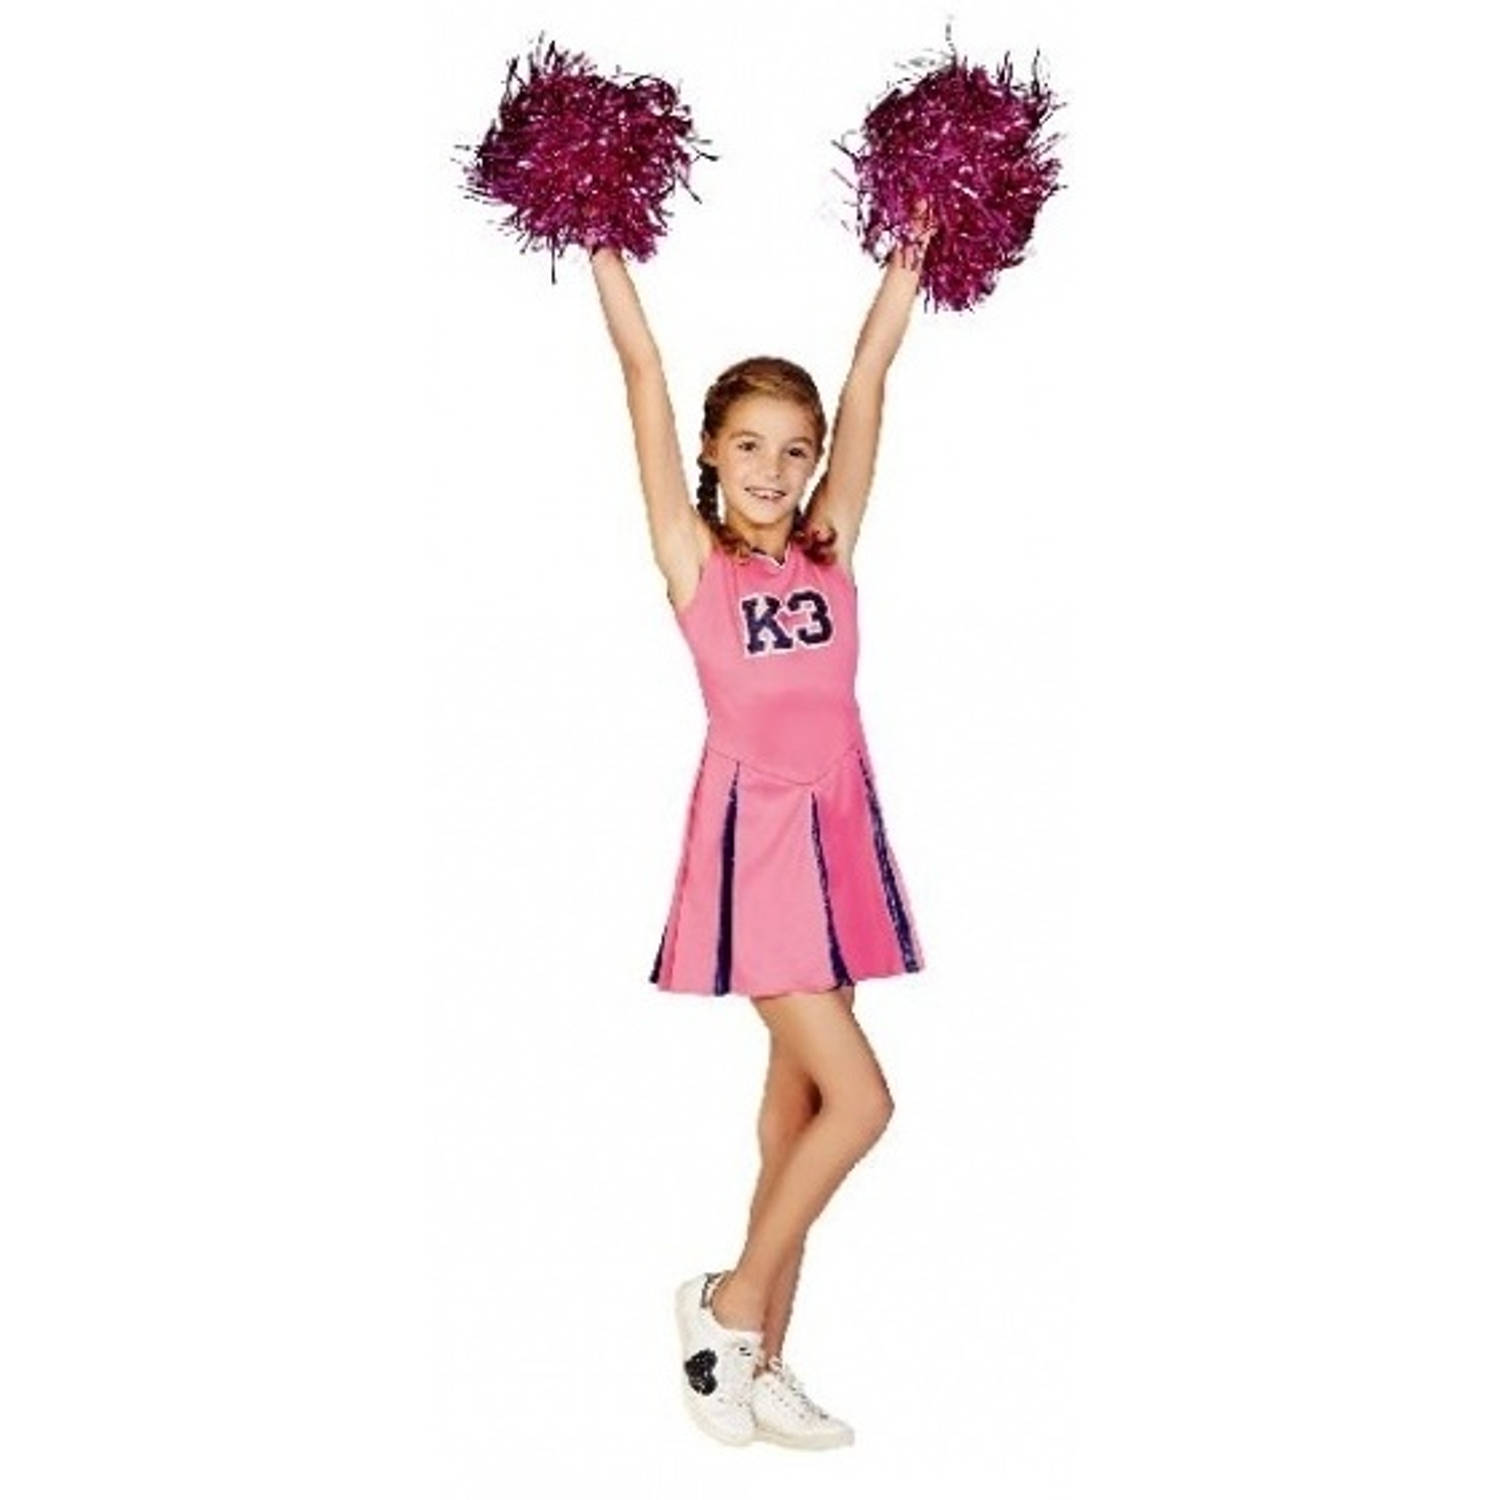 aardolie pak sympathie Studio 100 k3 verkleedjurk cheerleader 3-5 roze maat 116 | Blokker